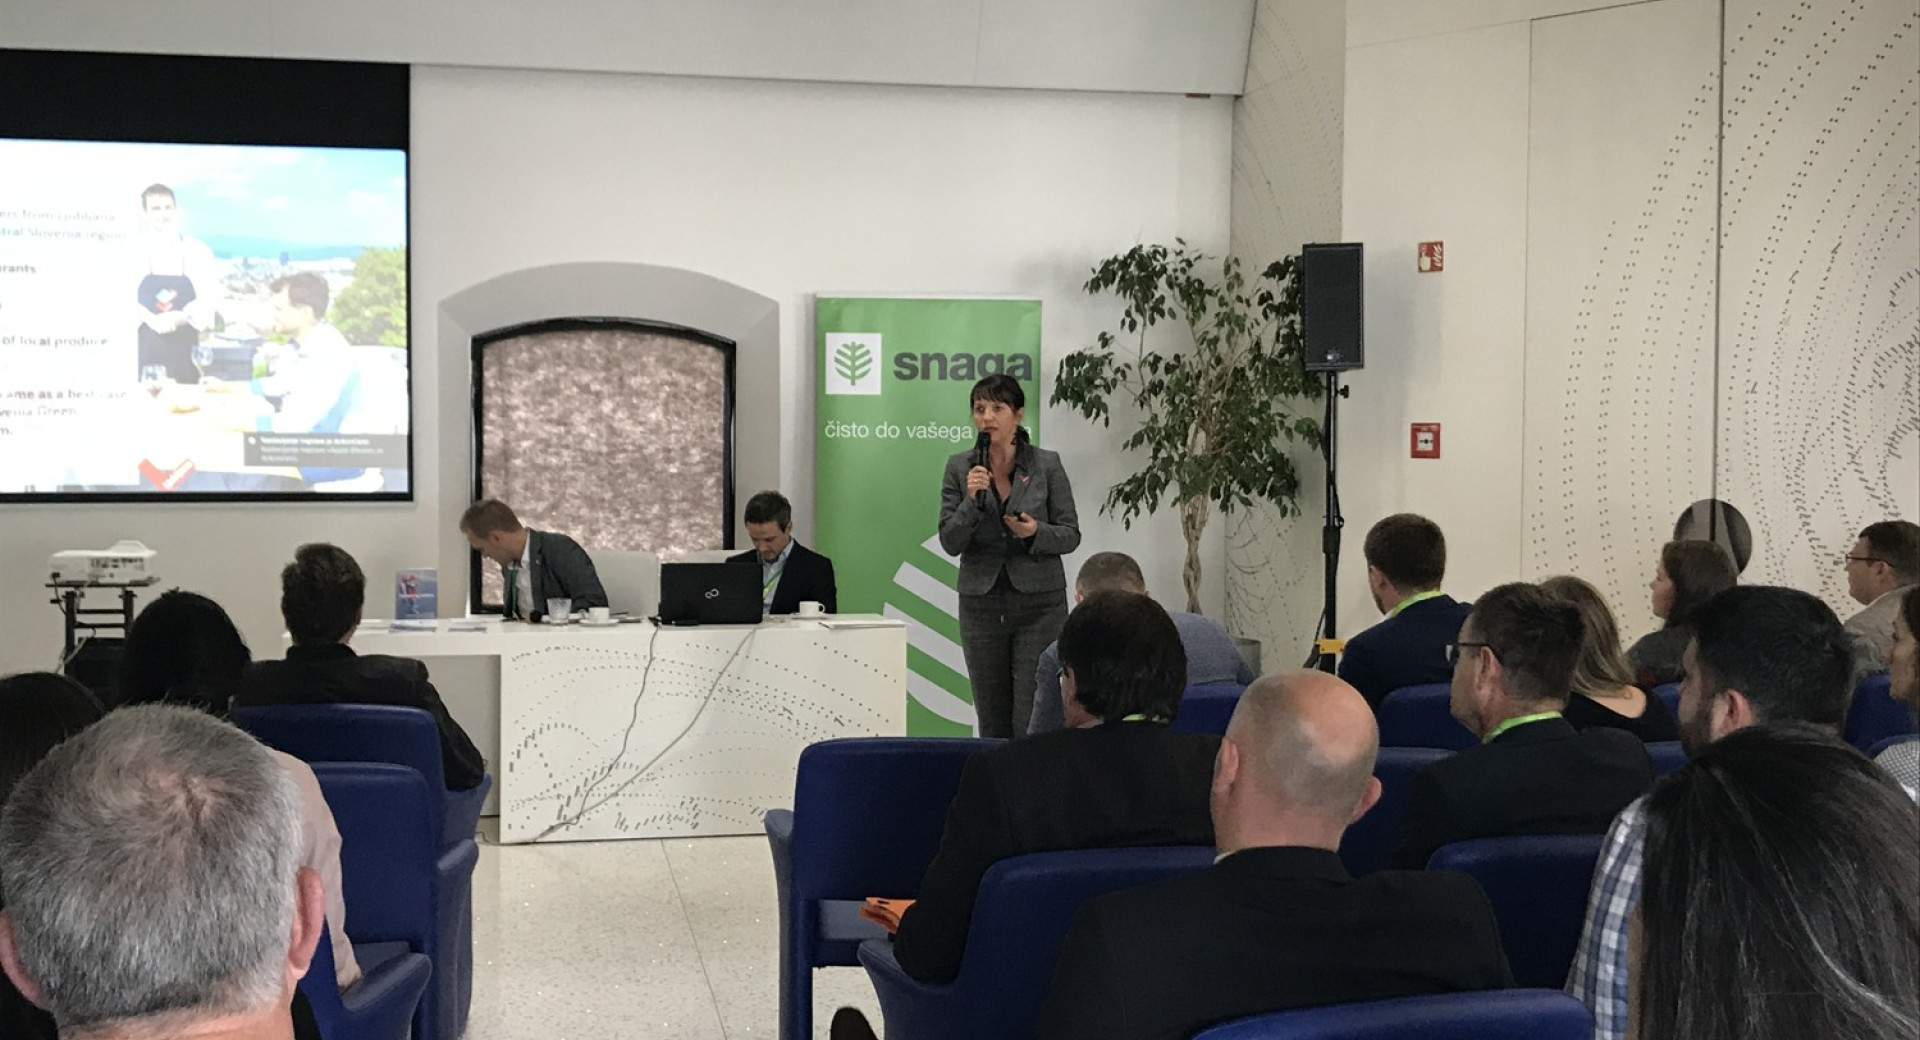 Direktorica Turizma Ljubljana Petra Stušek med predavanjem na temo Zelenih nabavnih verig.